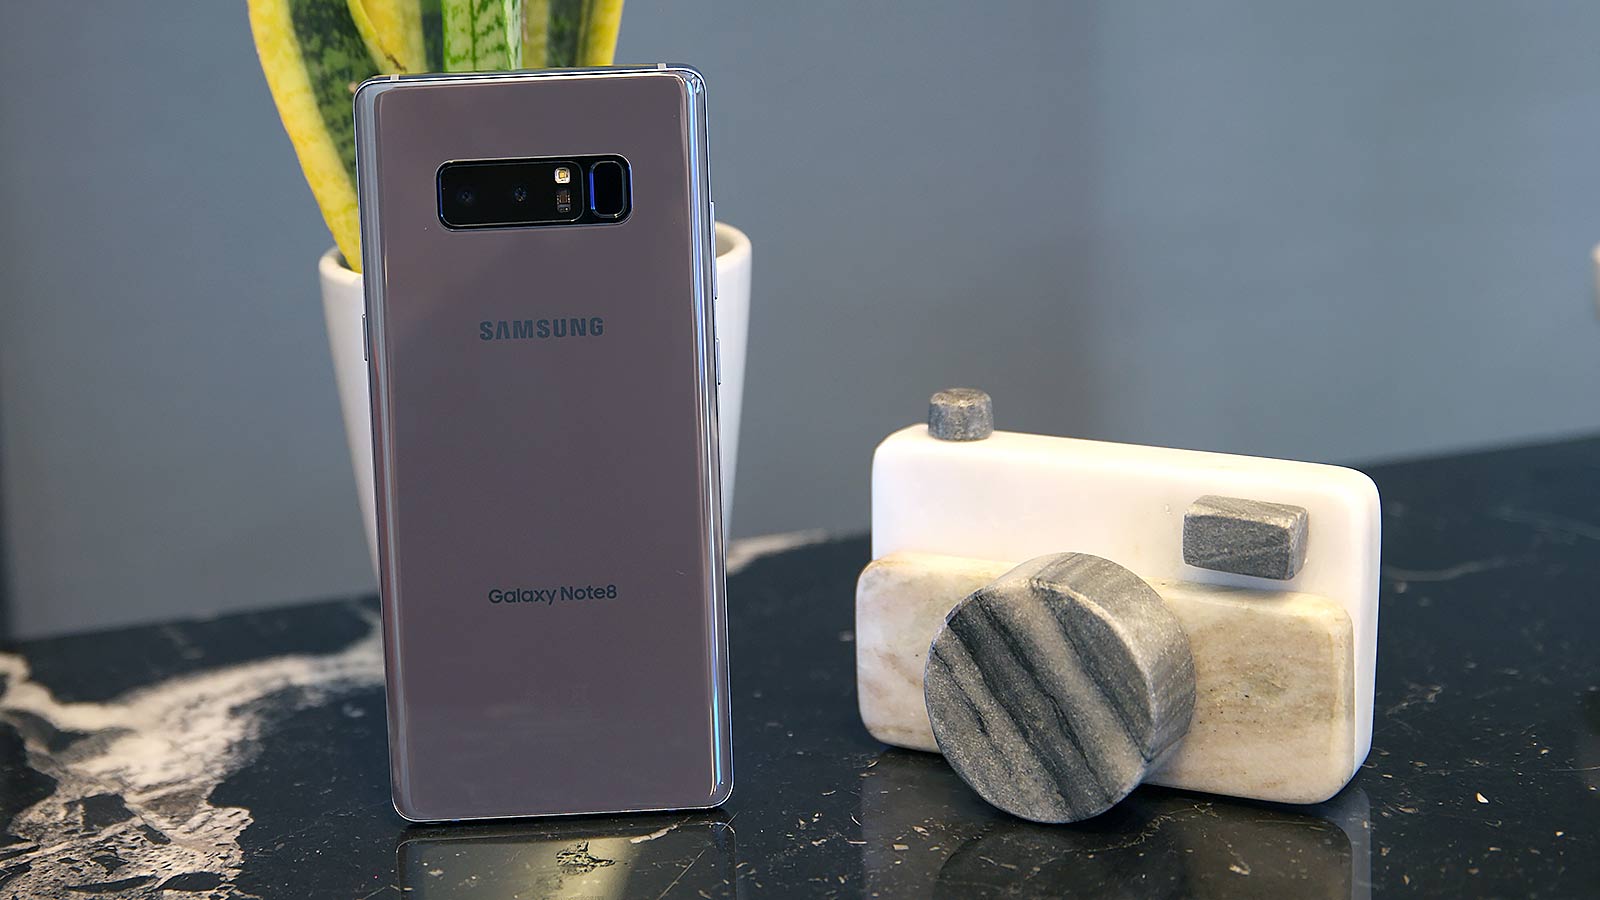 Samsung Note 8: The Return Of The Original Jumbo Phone